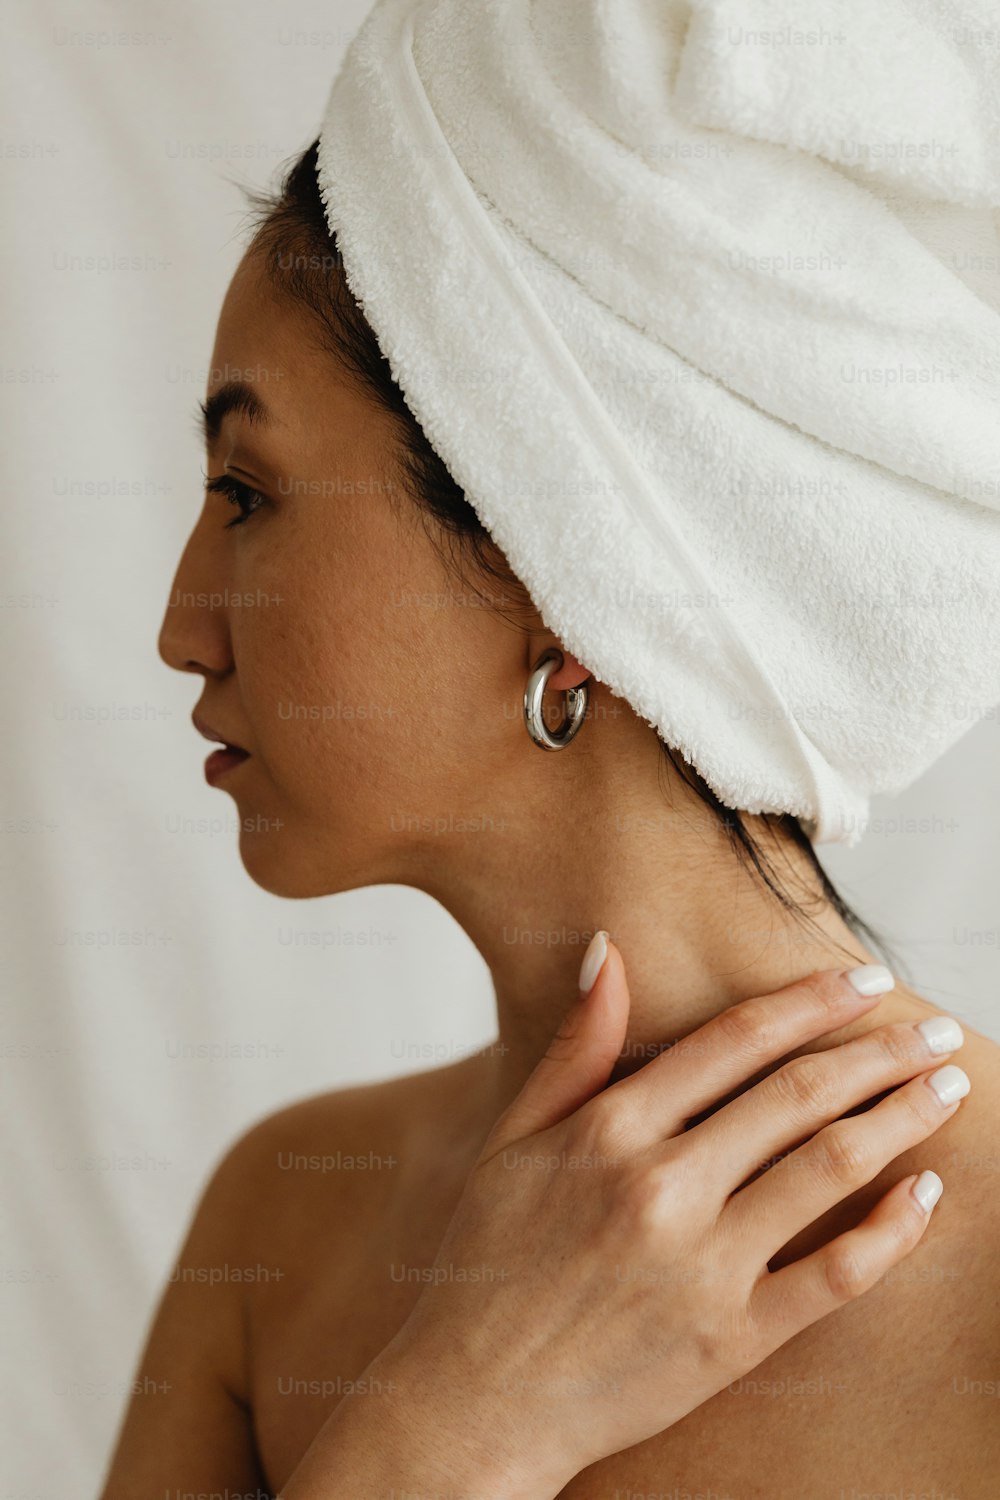 eine Frau mit einem Handtuch auf dem Kopf